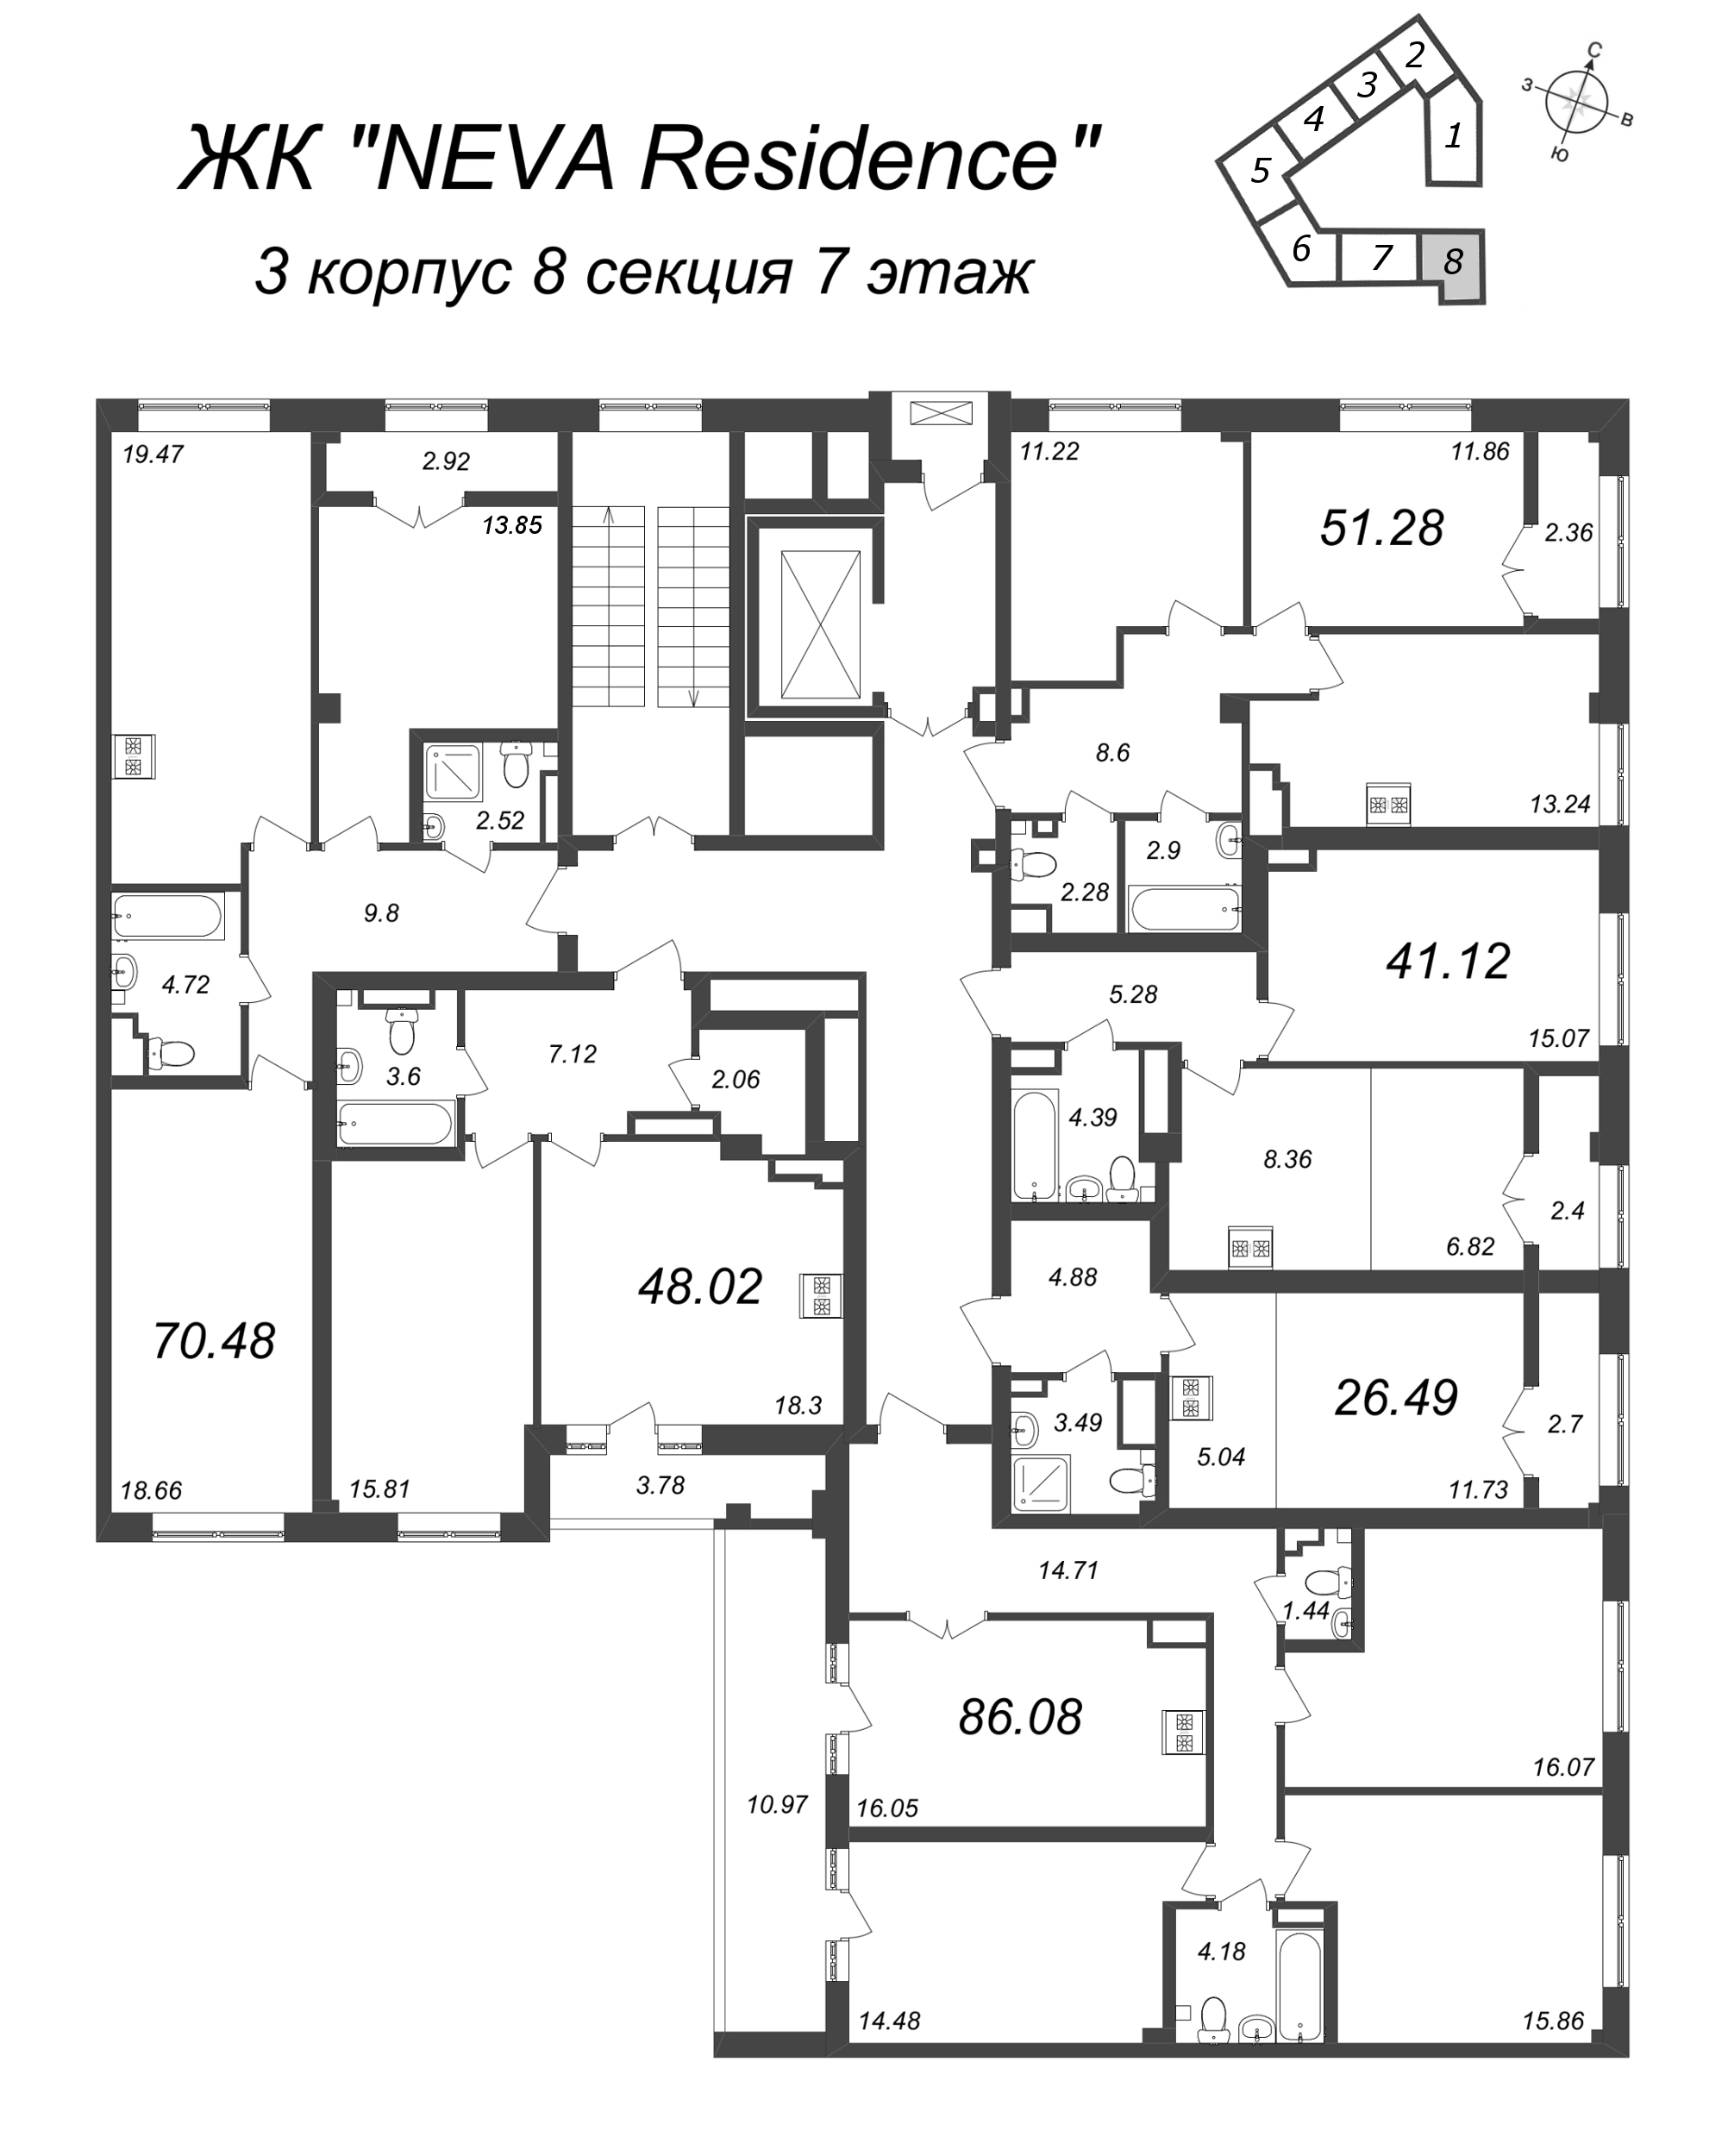 Квартира-студия, 26.49 м² в ЖК "Neva Residence" - планировка этажа